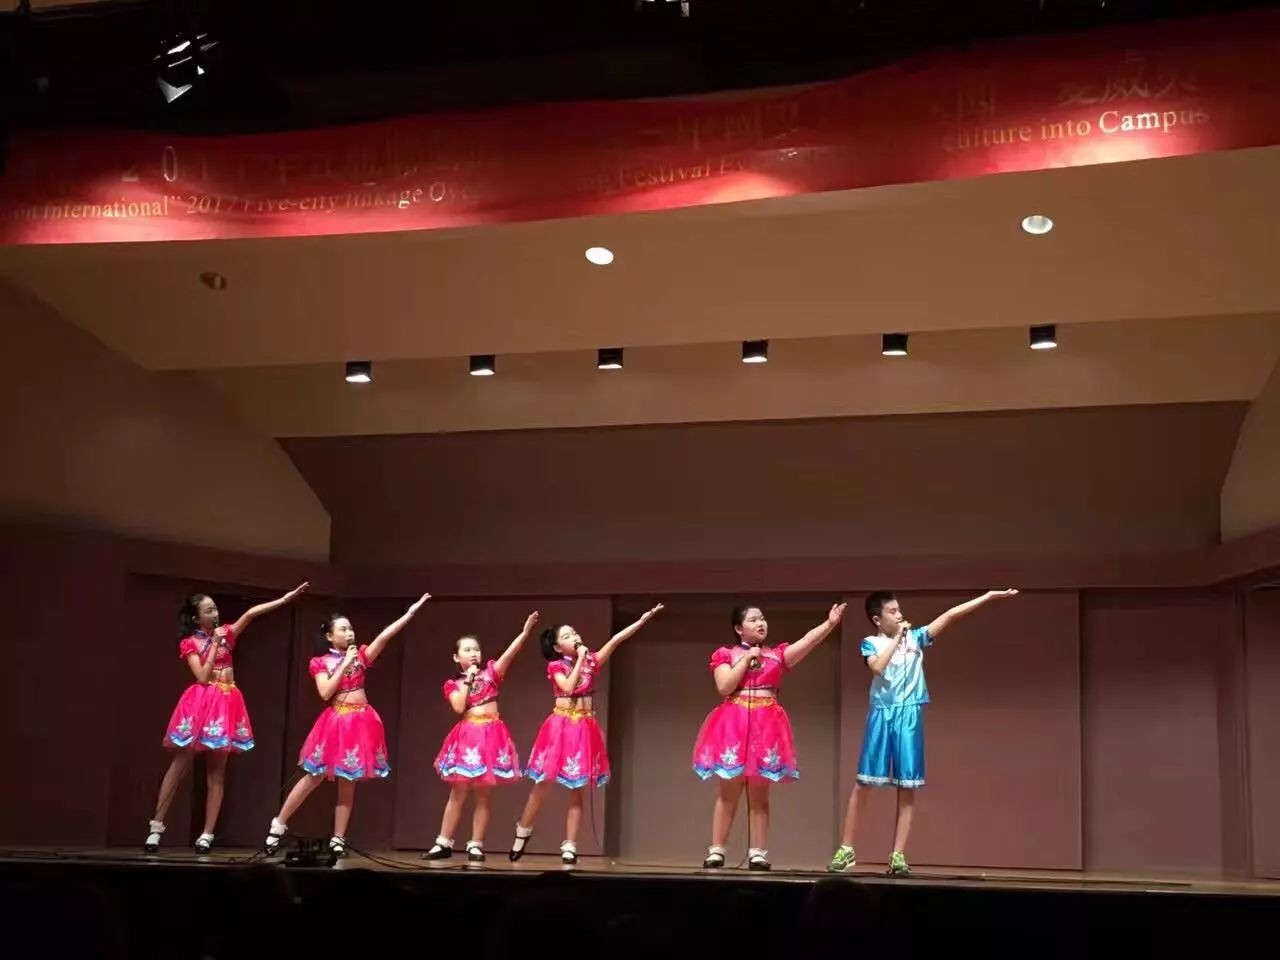 小云雀儿童合唱团,在夏威夷唱响天籁之音